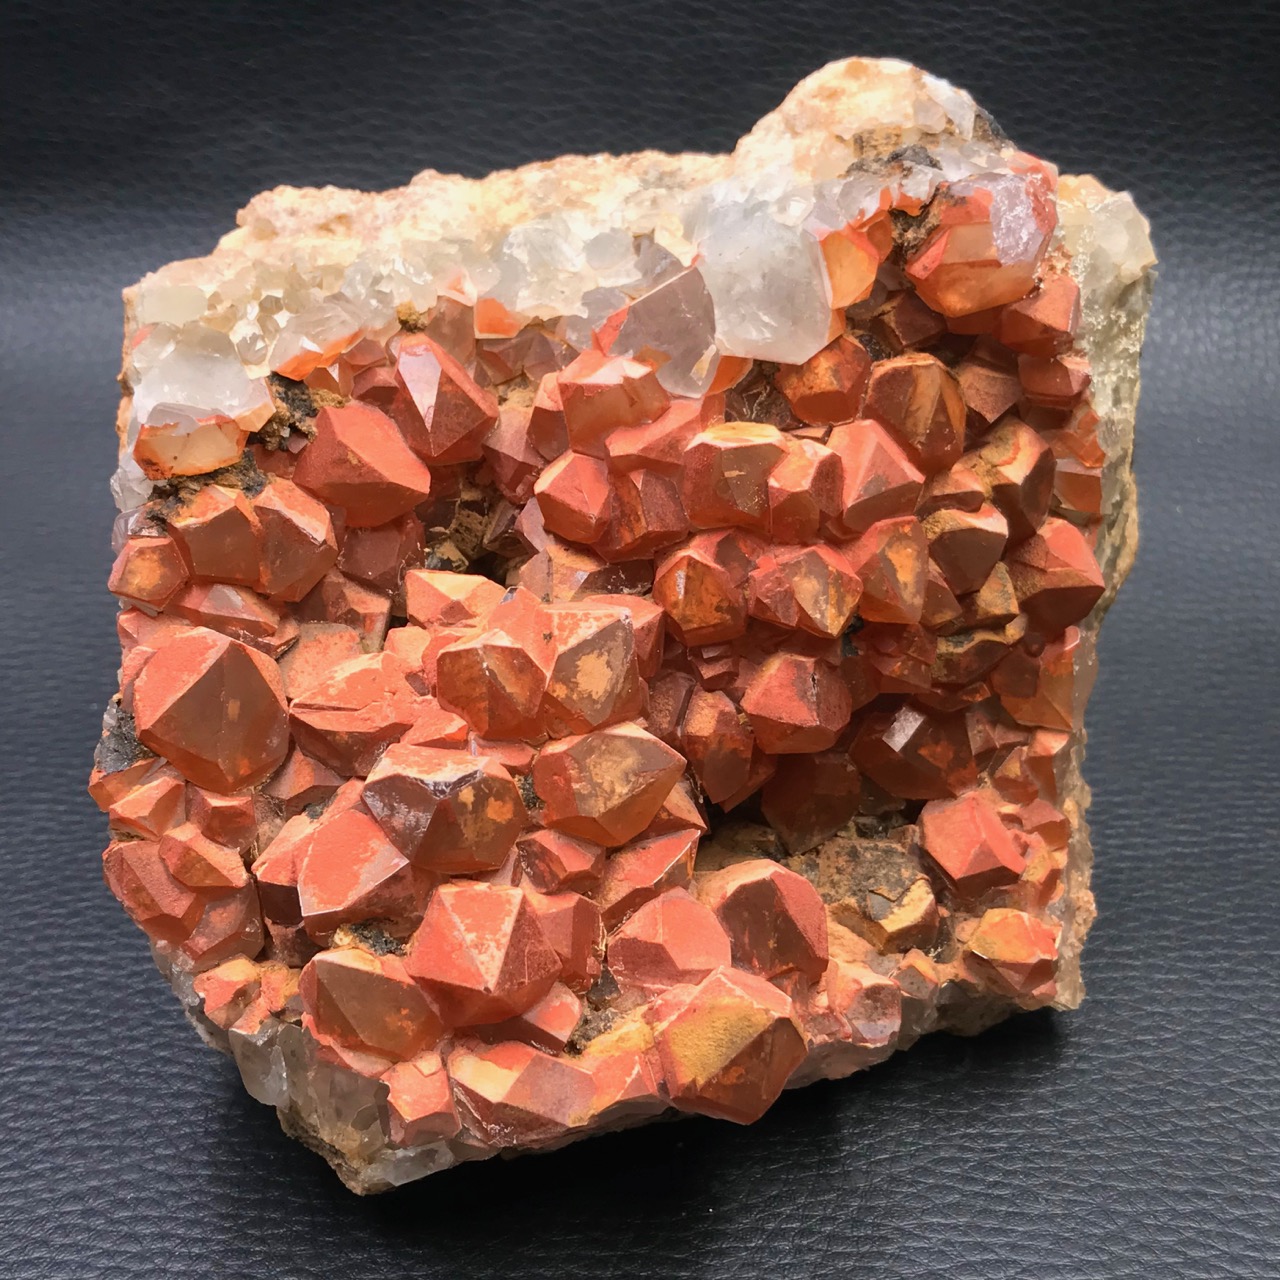 Druse de quartz hematoïde du Puy de Dôme, France (réf dqh1)